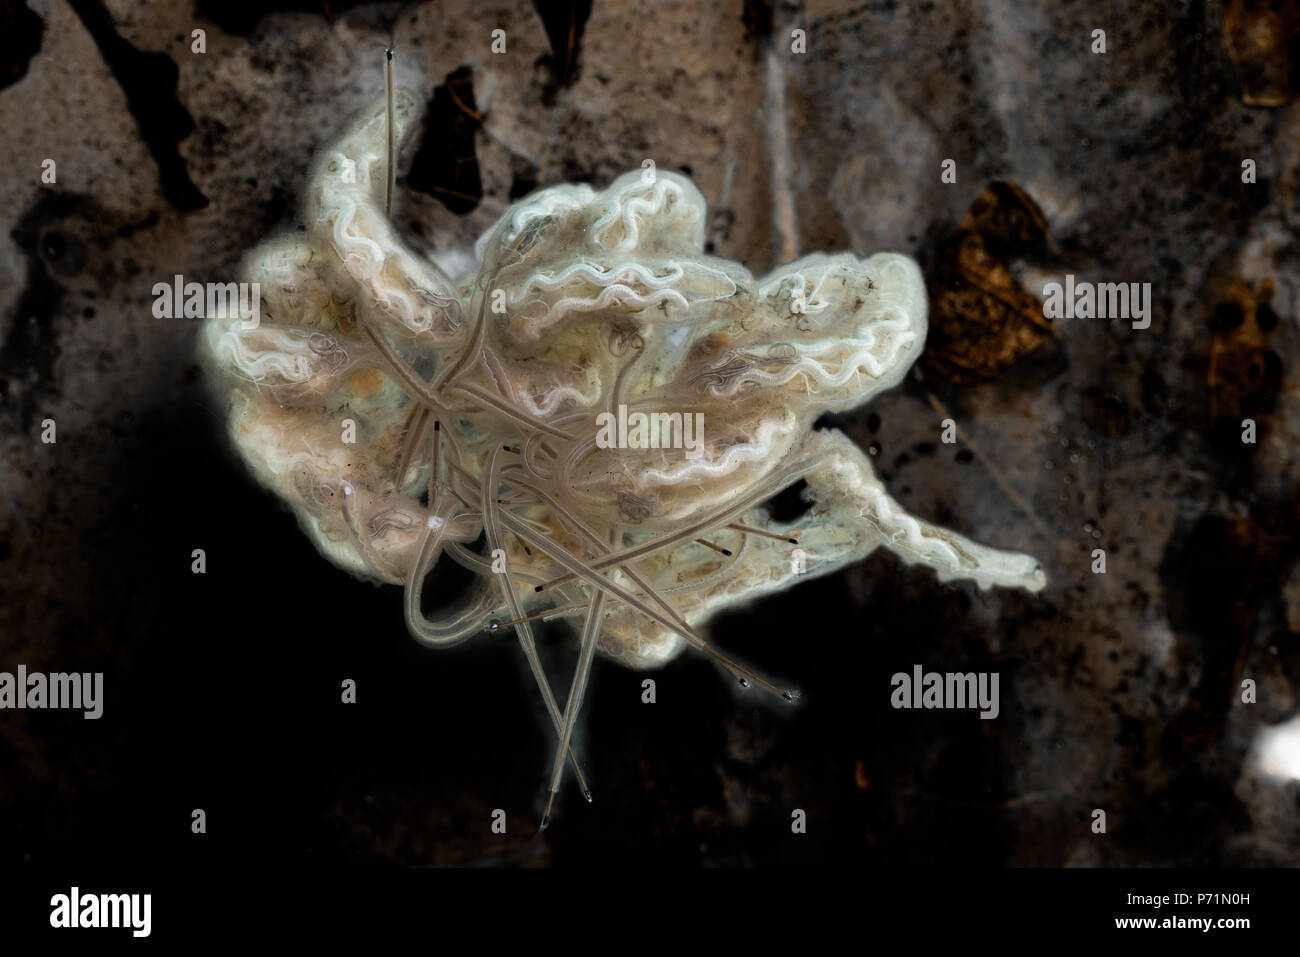 Rat-tailed vermi, Drone larve di mosca con interno il sistema digestivo che mostra chiaramente in alto lungo la lunghezza del corpo e la lunga coda a sifone Foto Stock